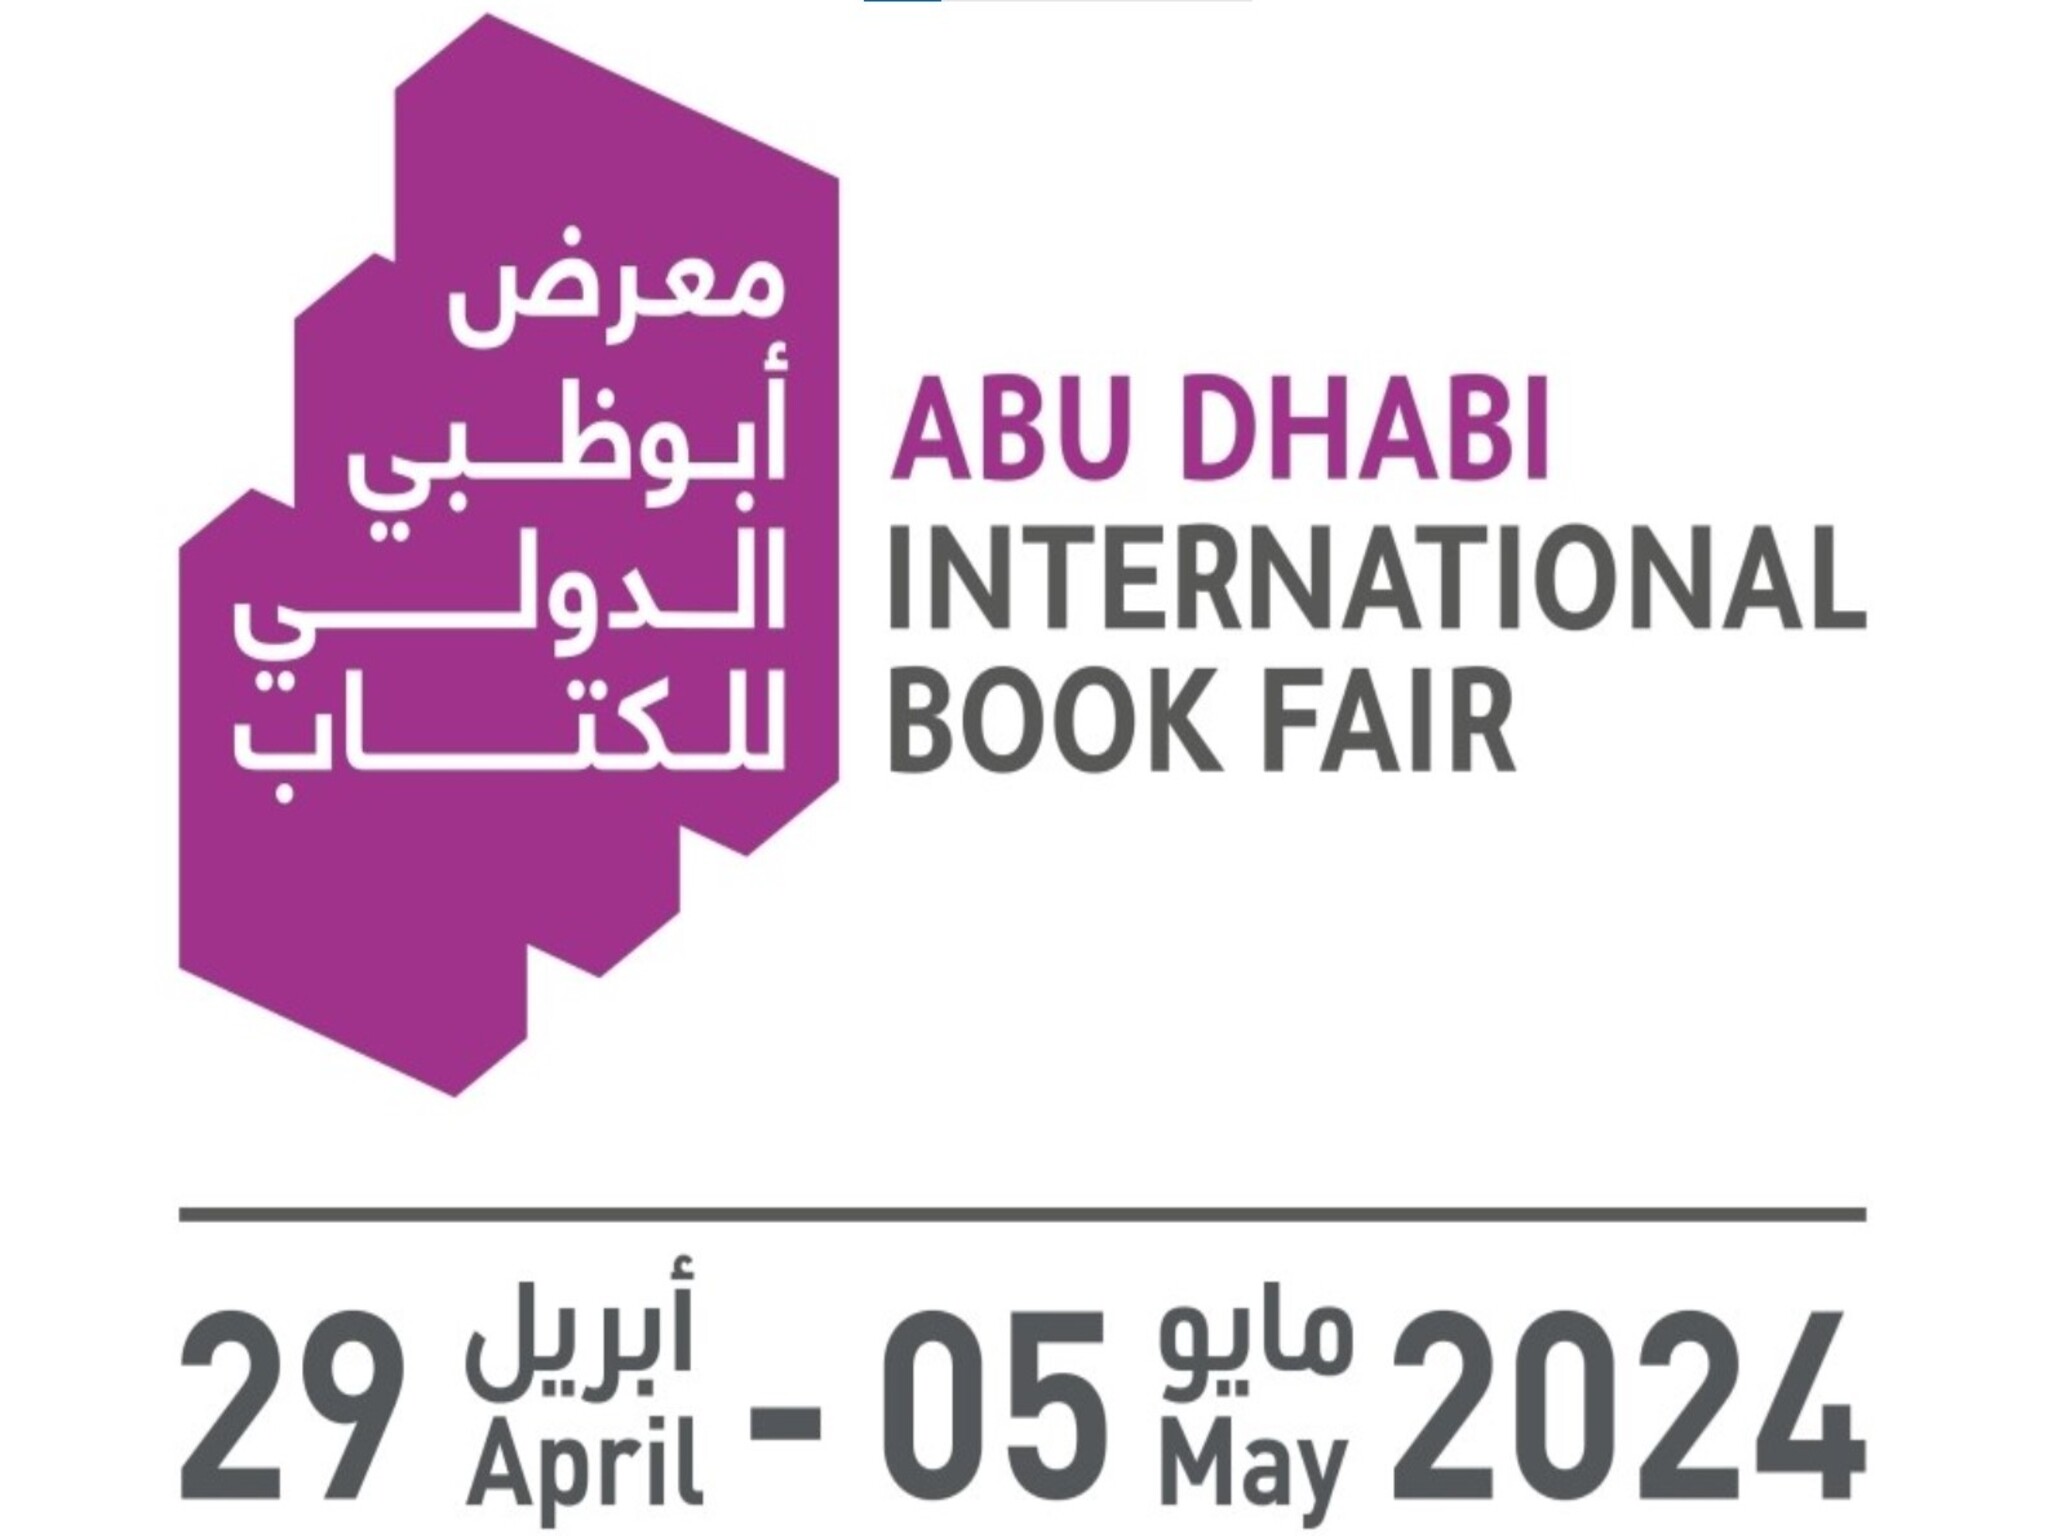 بدء إنطلاق فعاليات النسخة الثالثة والثلاون من "معرض أبوظبي الدولي للكتاب"